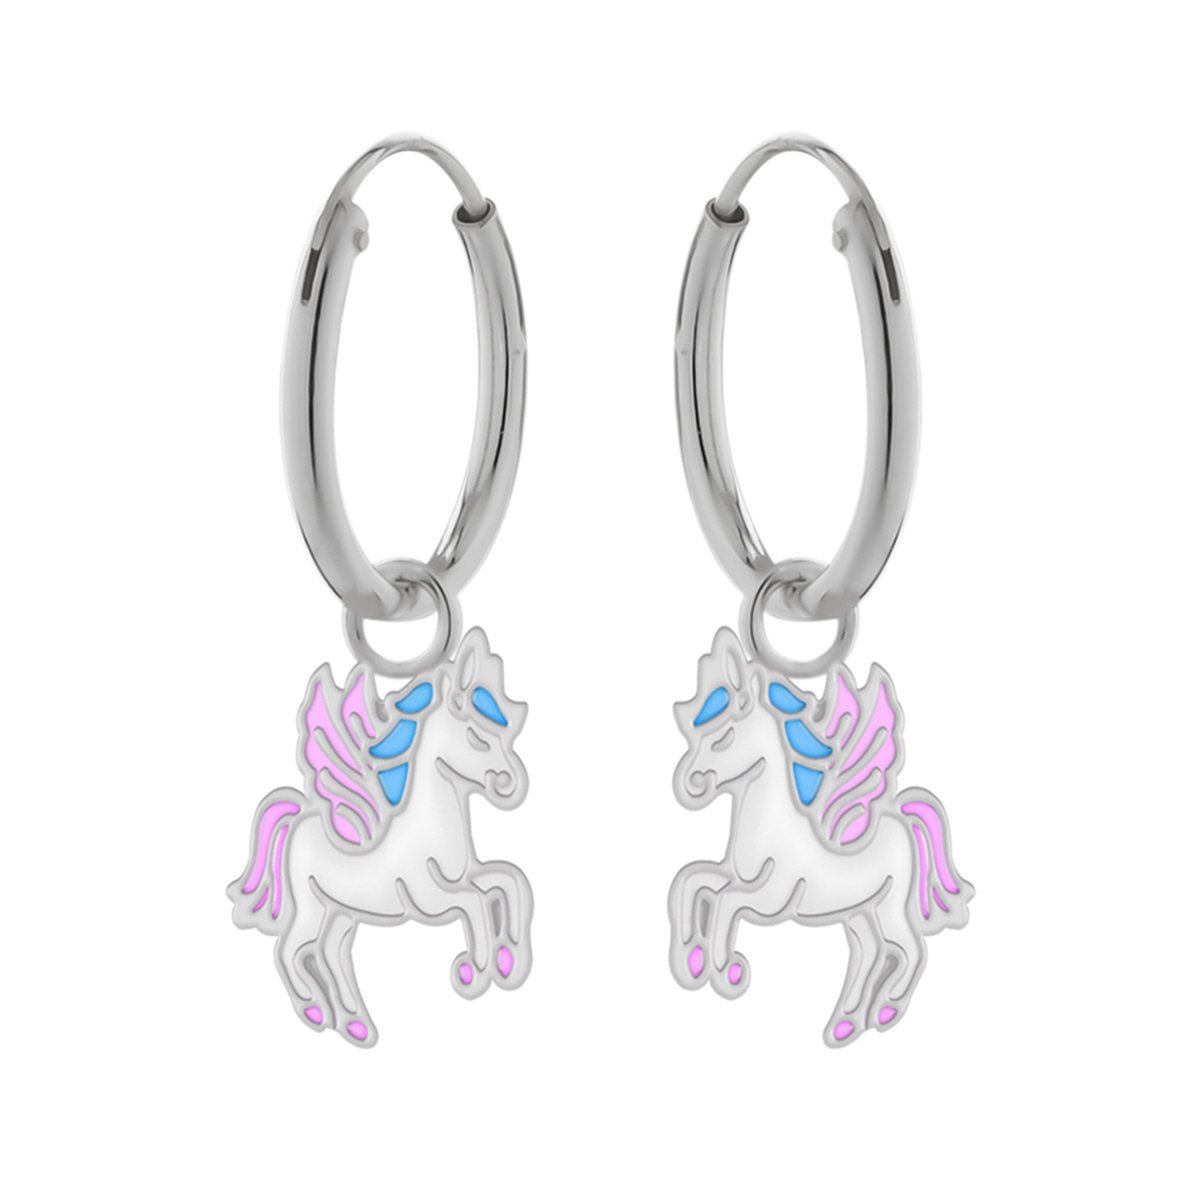 Oorbellen meisjes zilver | Eenhoorn oorbellen | Zilveren oorbellen met hanger, eenhoorn met blauwe manen en roze vleugels